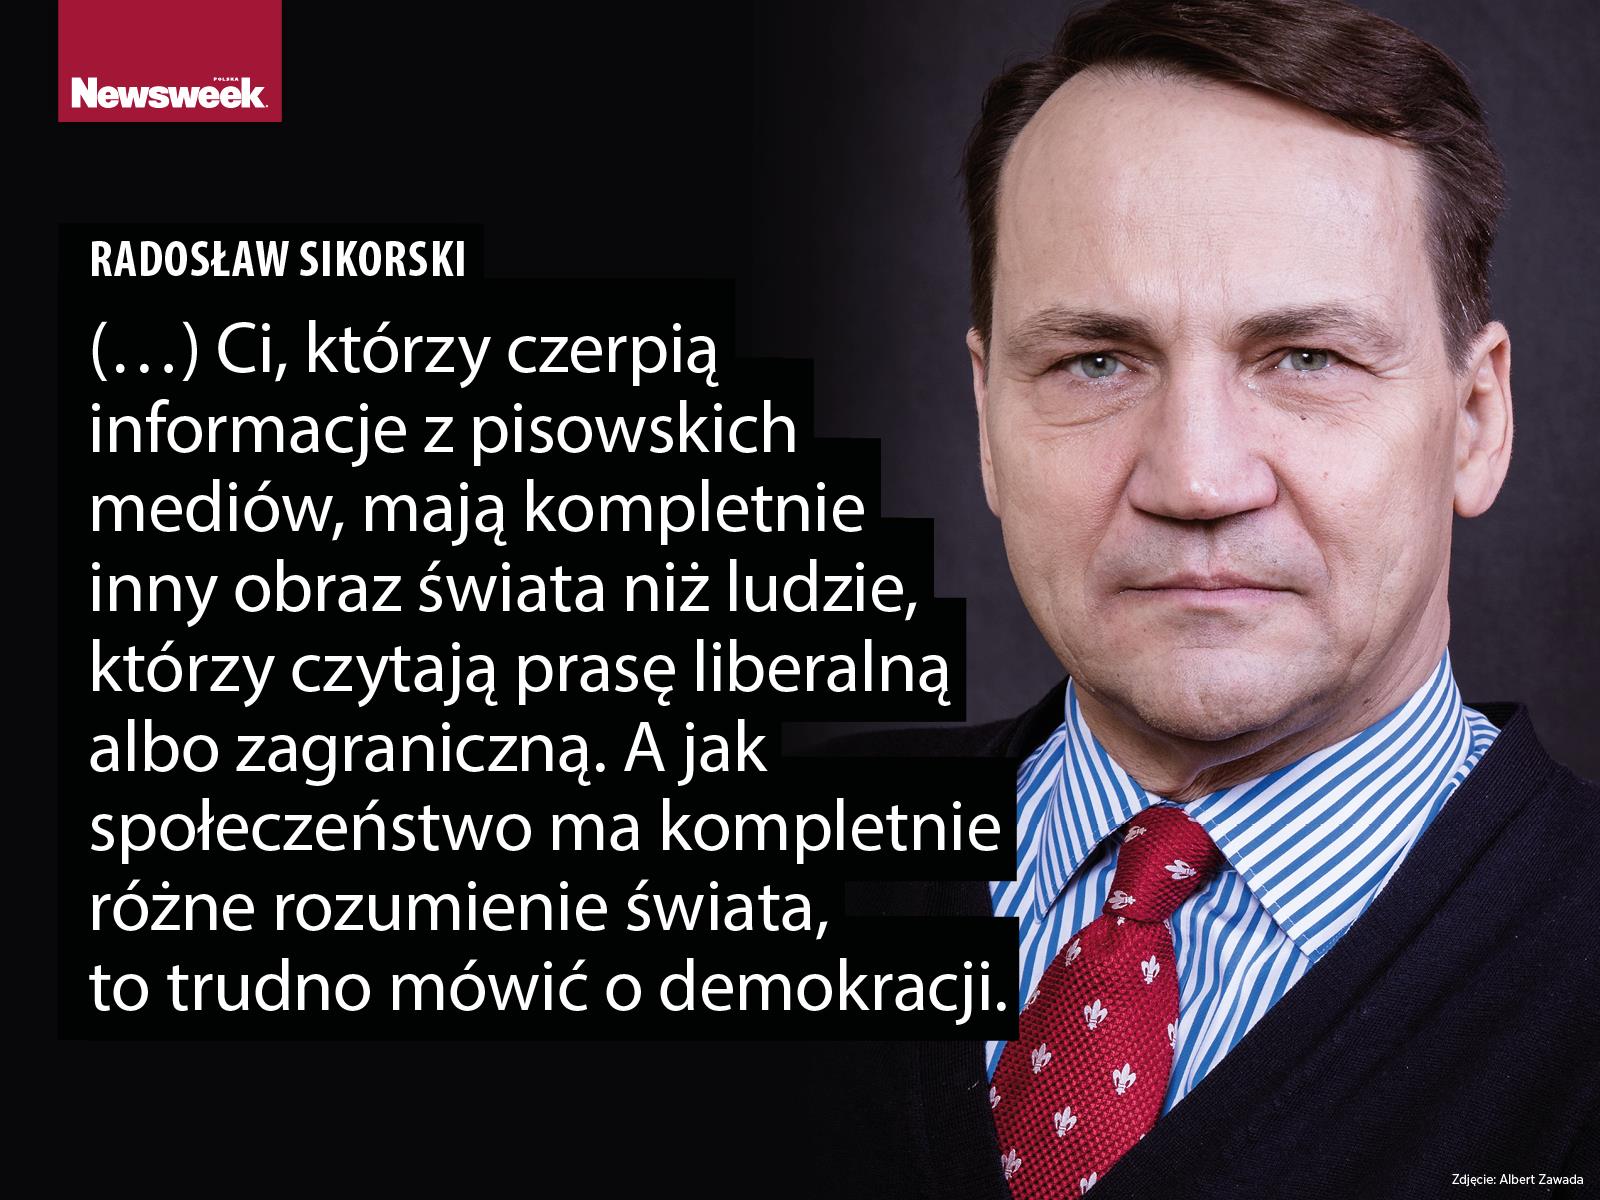 Radosław Sikorski polityka